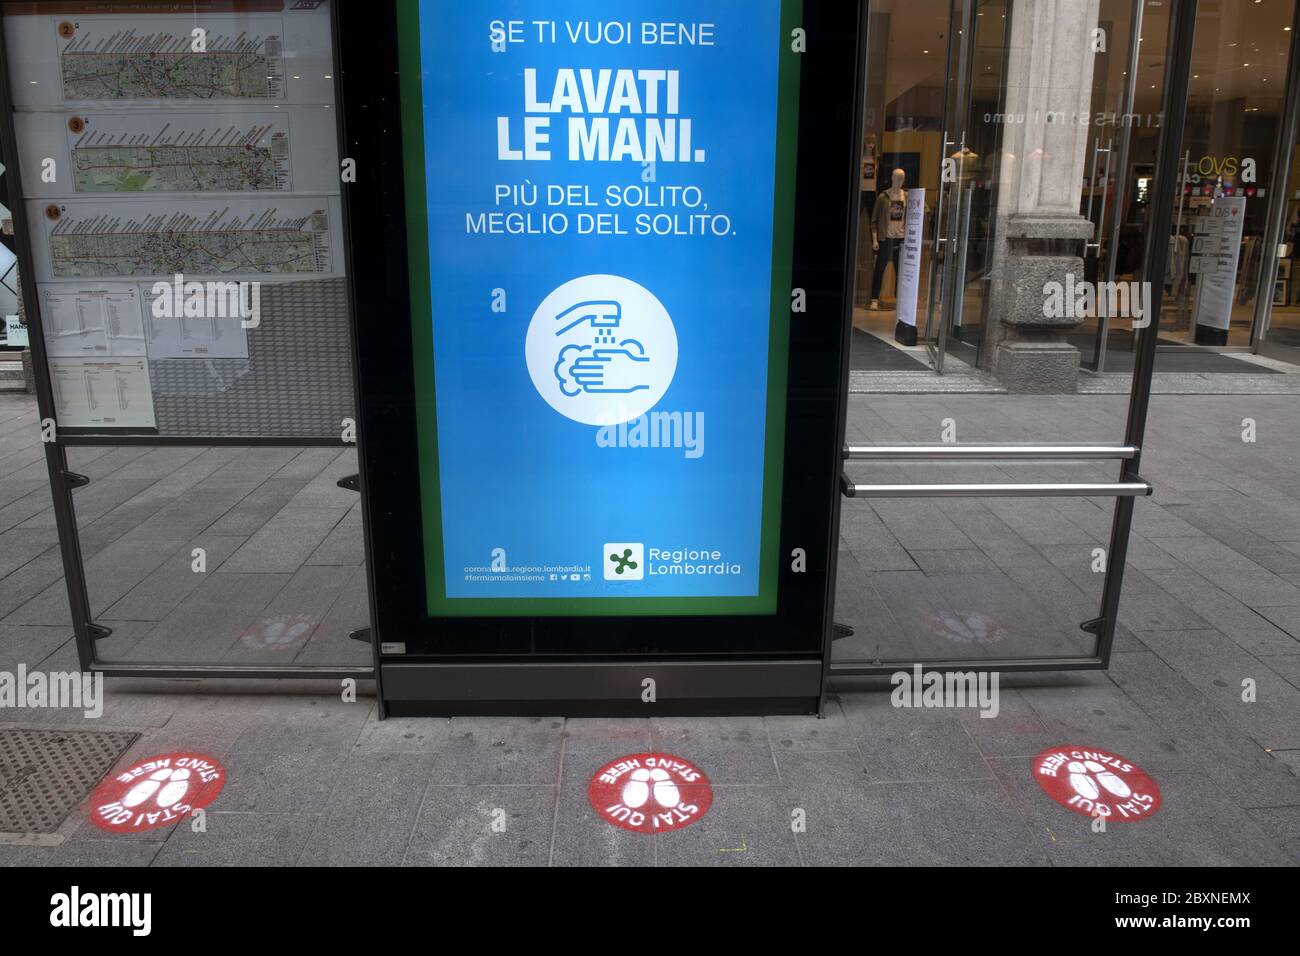 Stazione dei tram con cartelli a distanza sociale sul pavimento per la sicurezza sanitaria durante la crisi del Covid-19, a Milano, Italia. Foto Stock